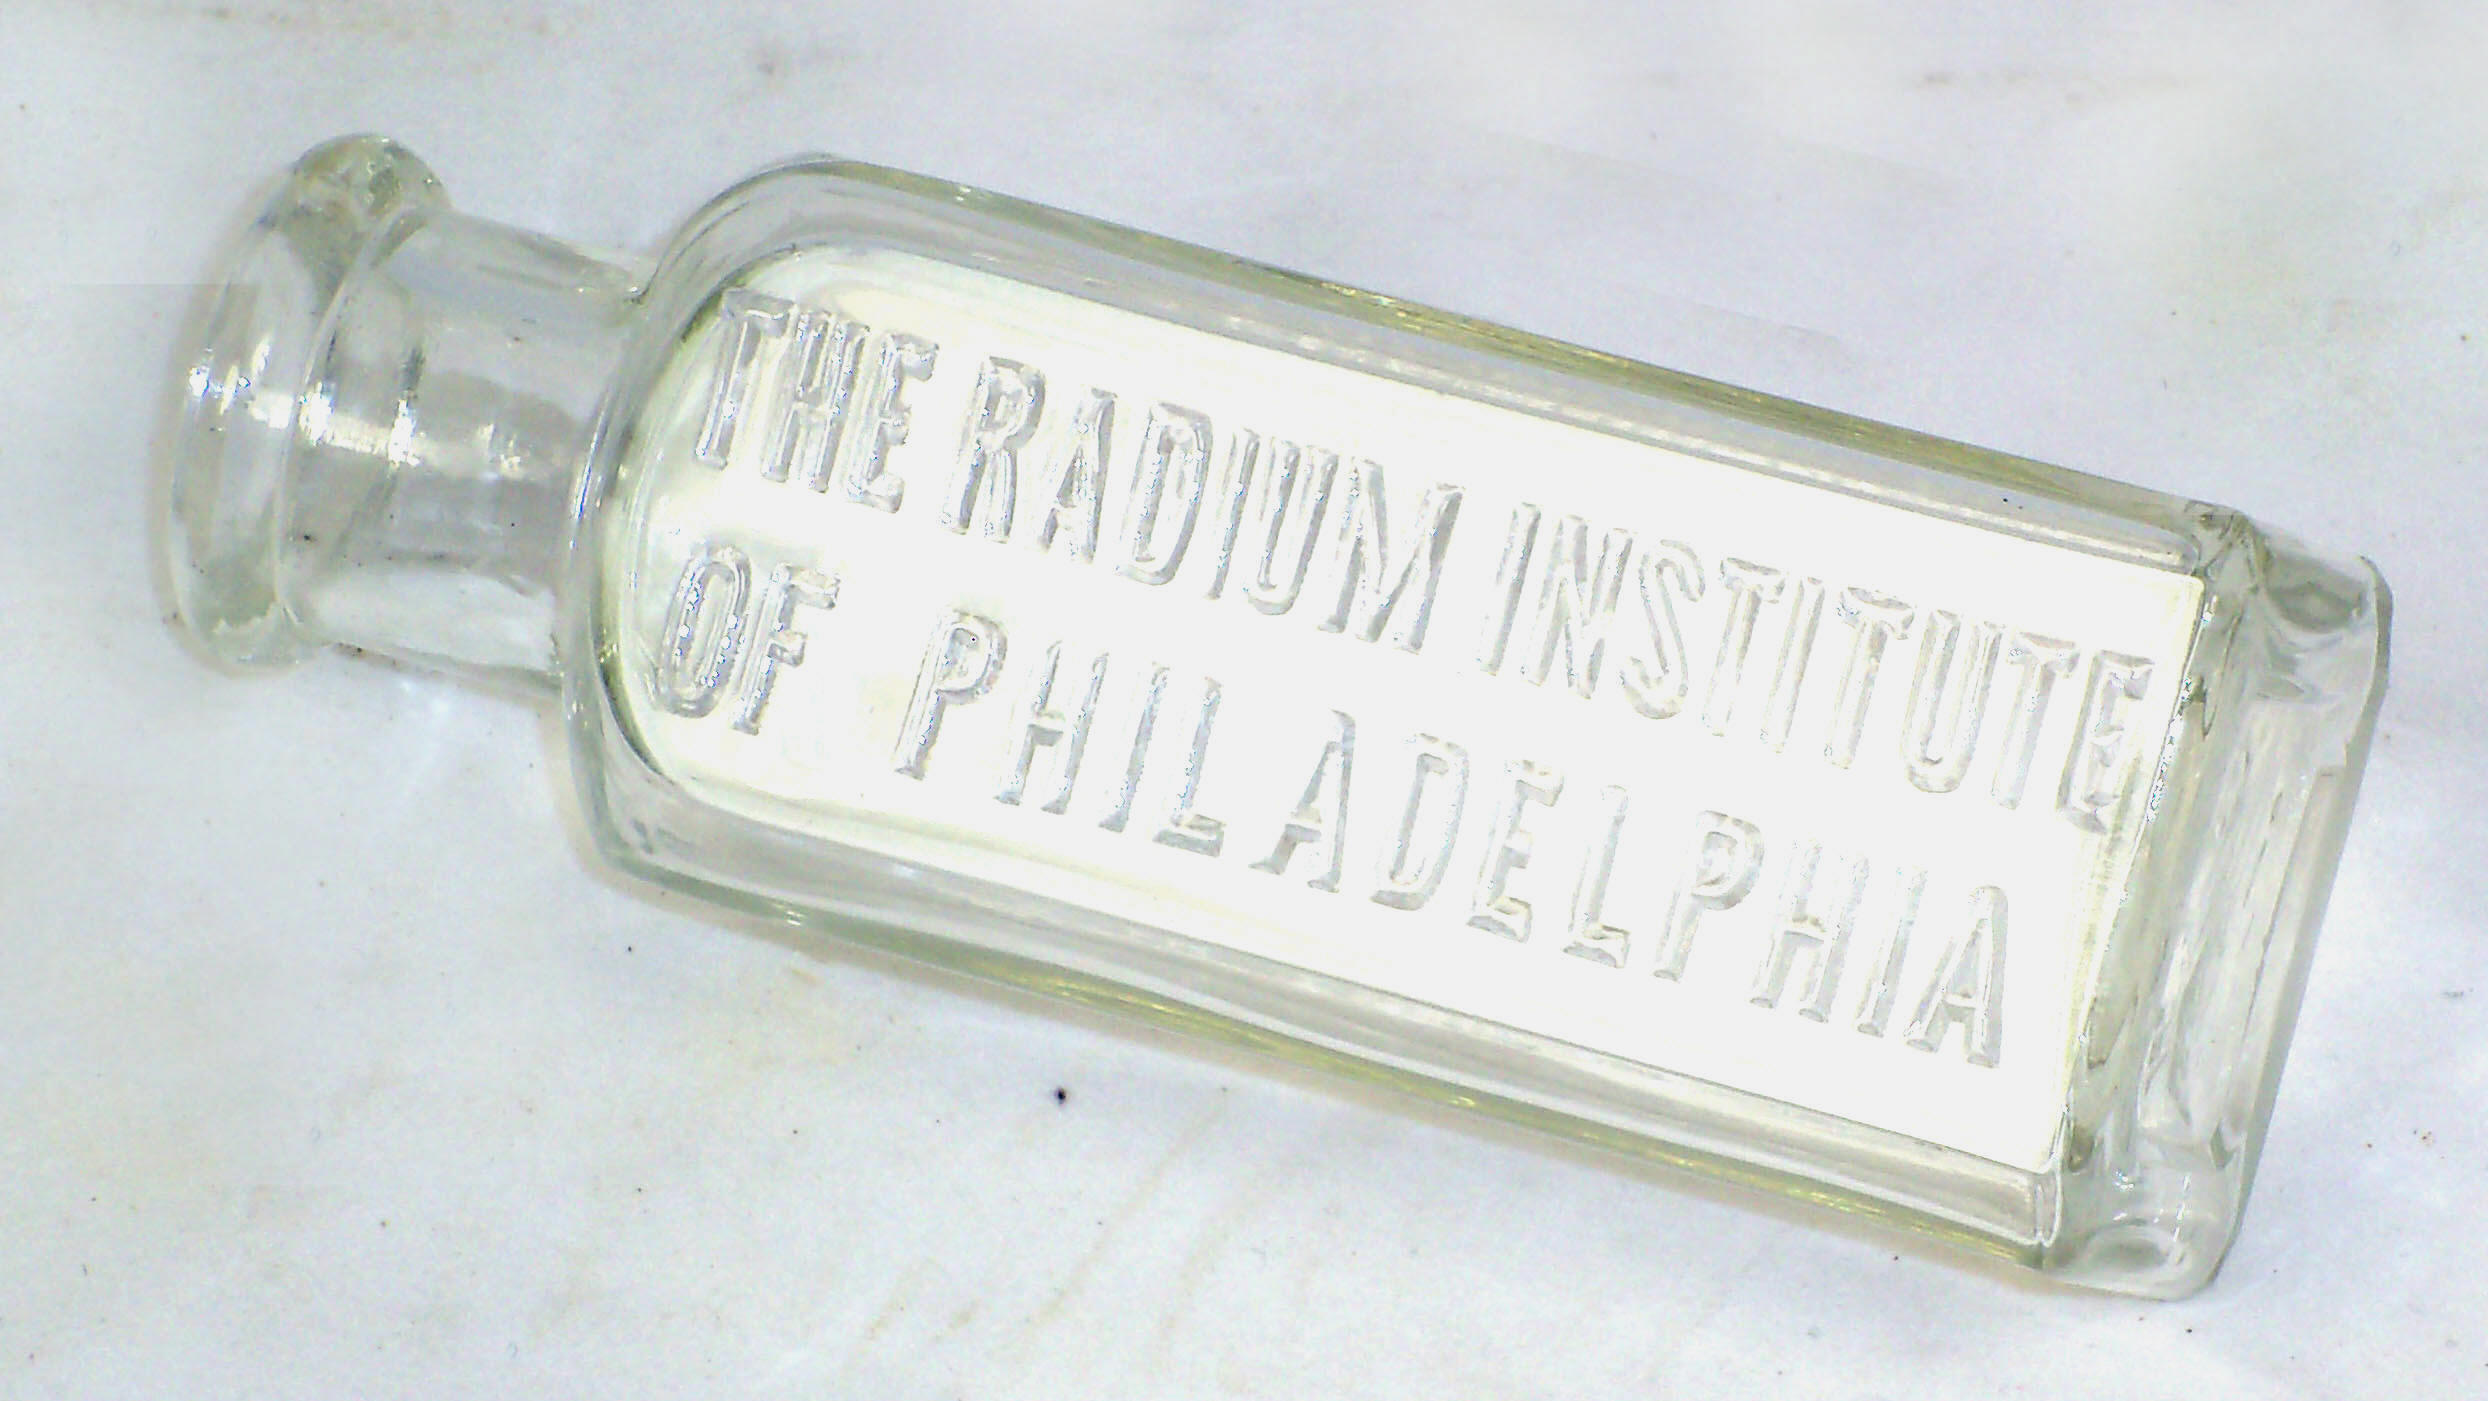 Radium Institute of Philadelphia Bottle (ca. 1914-1915)